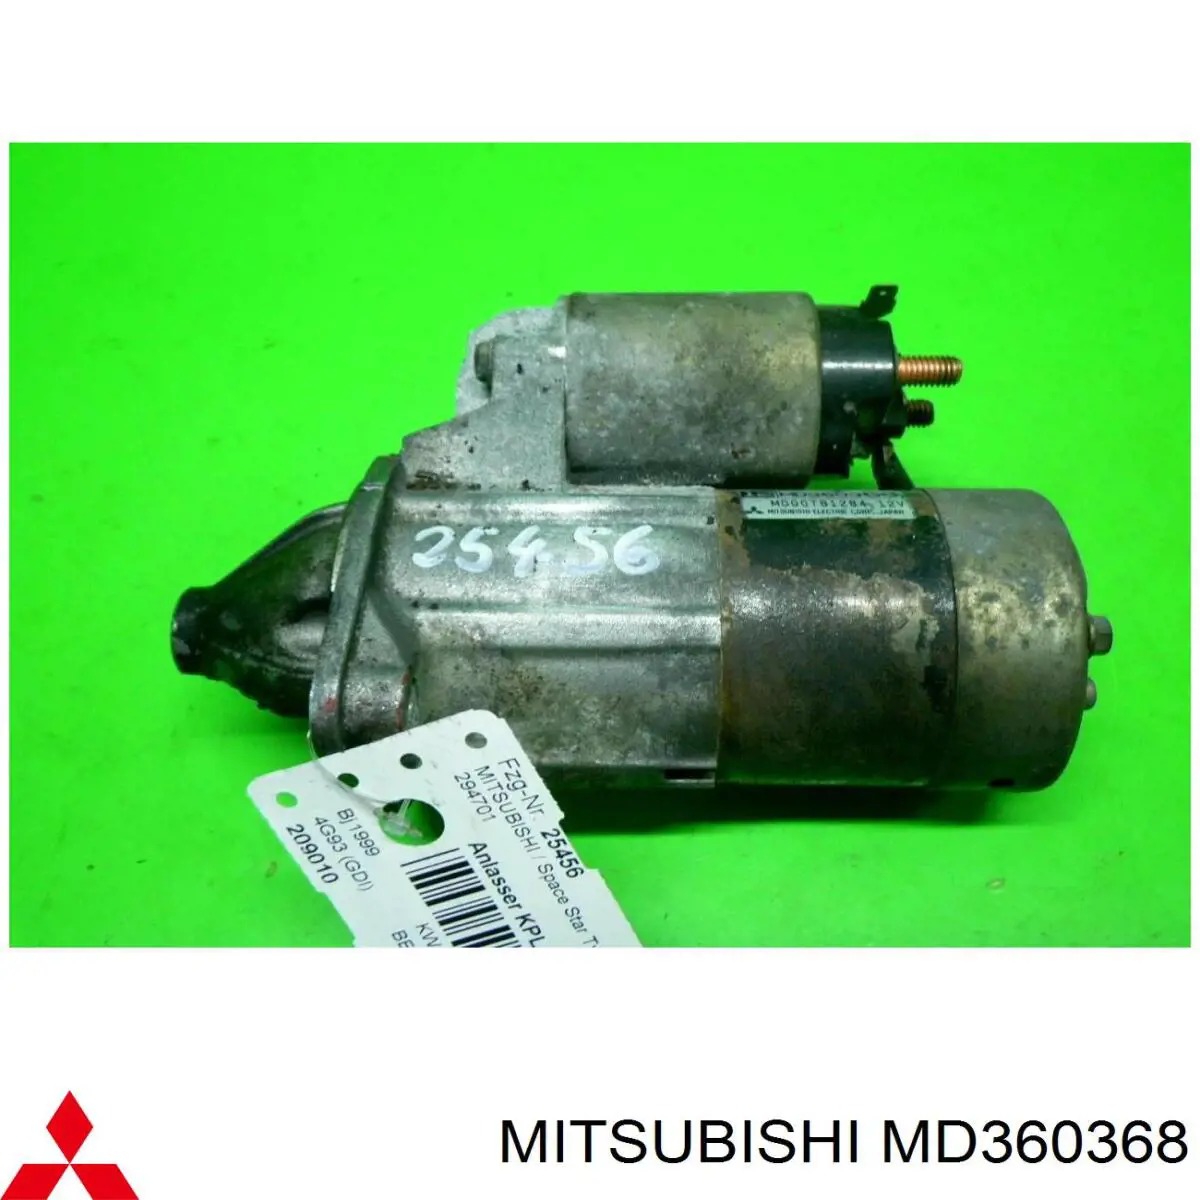 MD360368 Mitsubishi motor de arranque